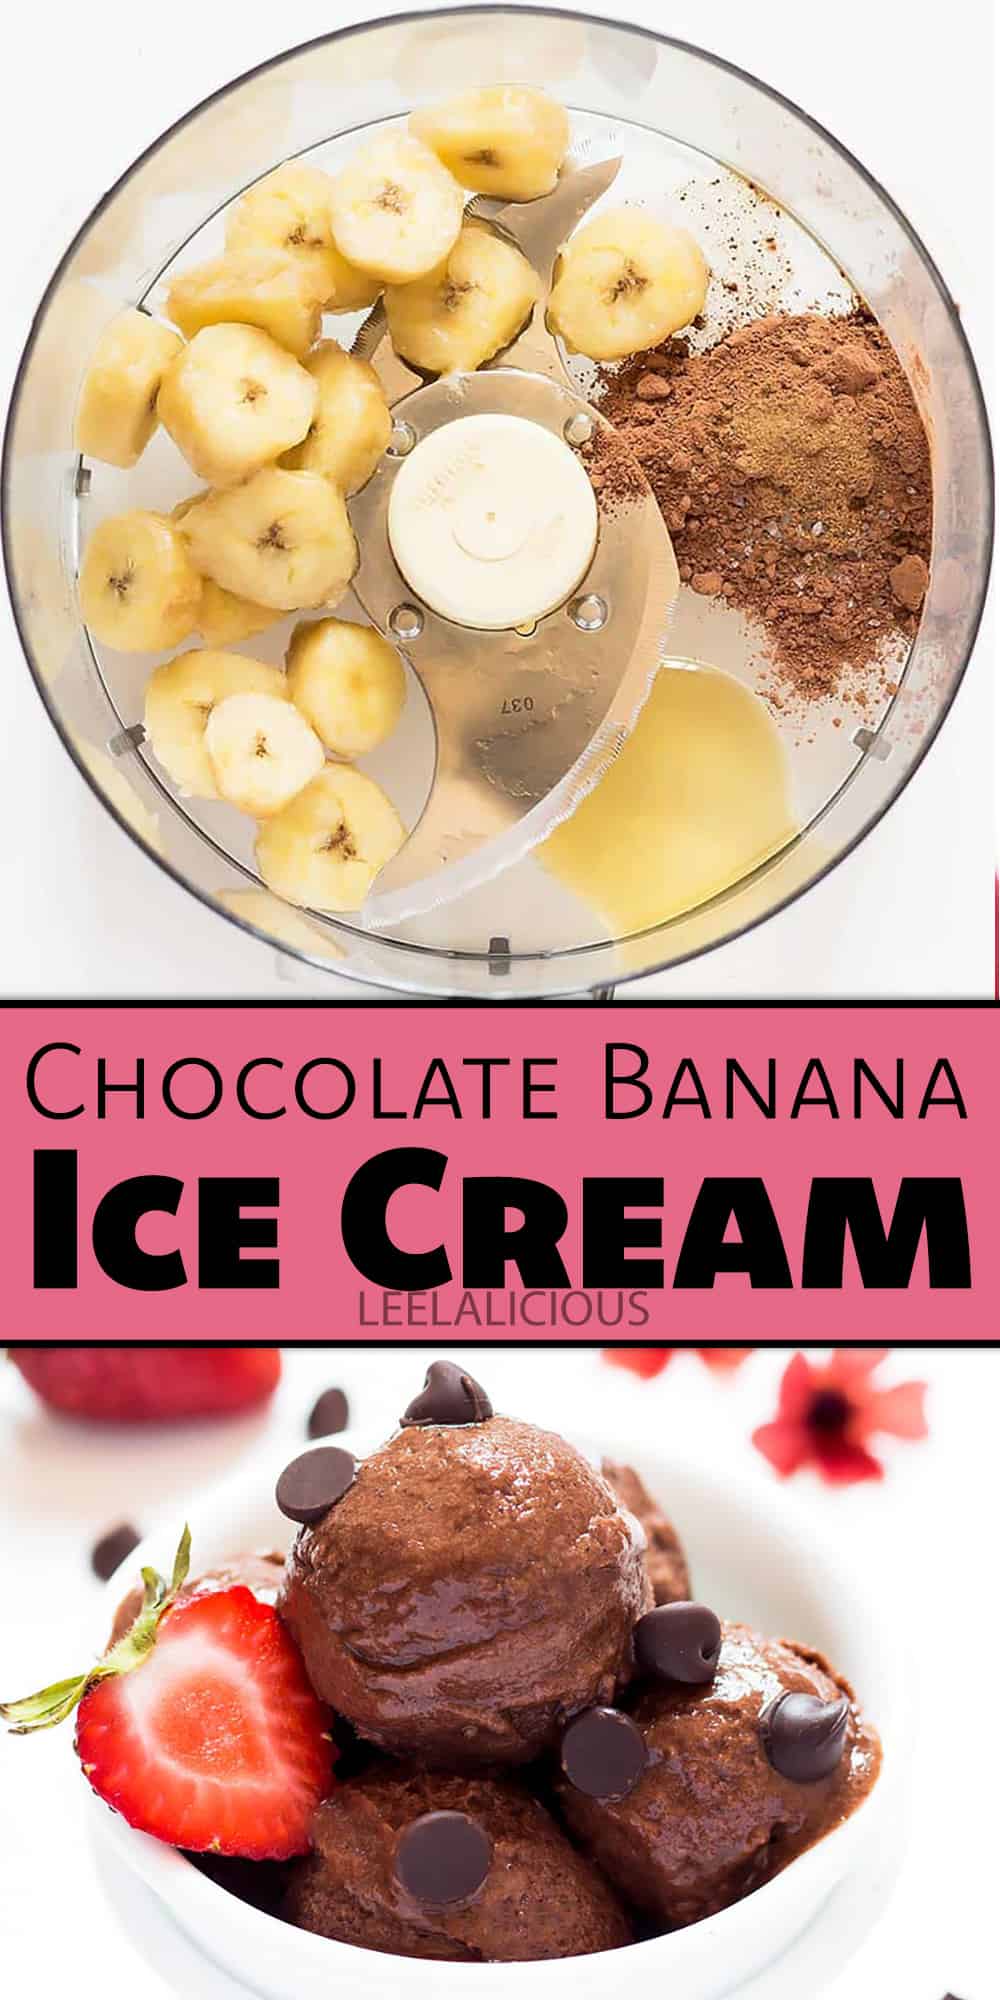 Chocolate Banana Ice Cream Tutorial